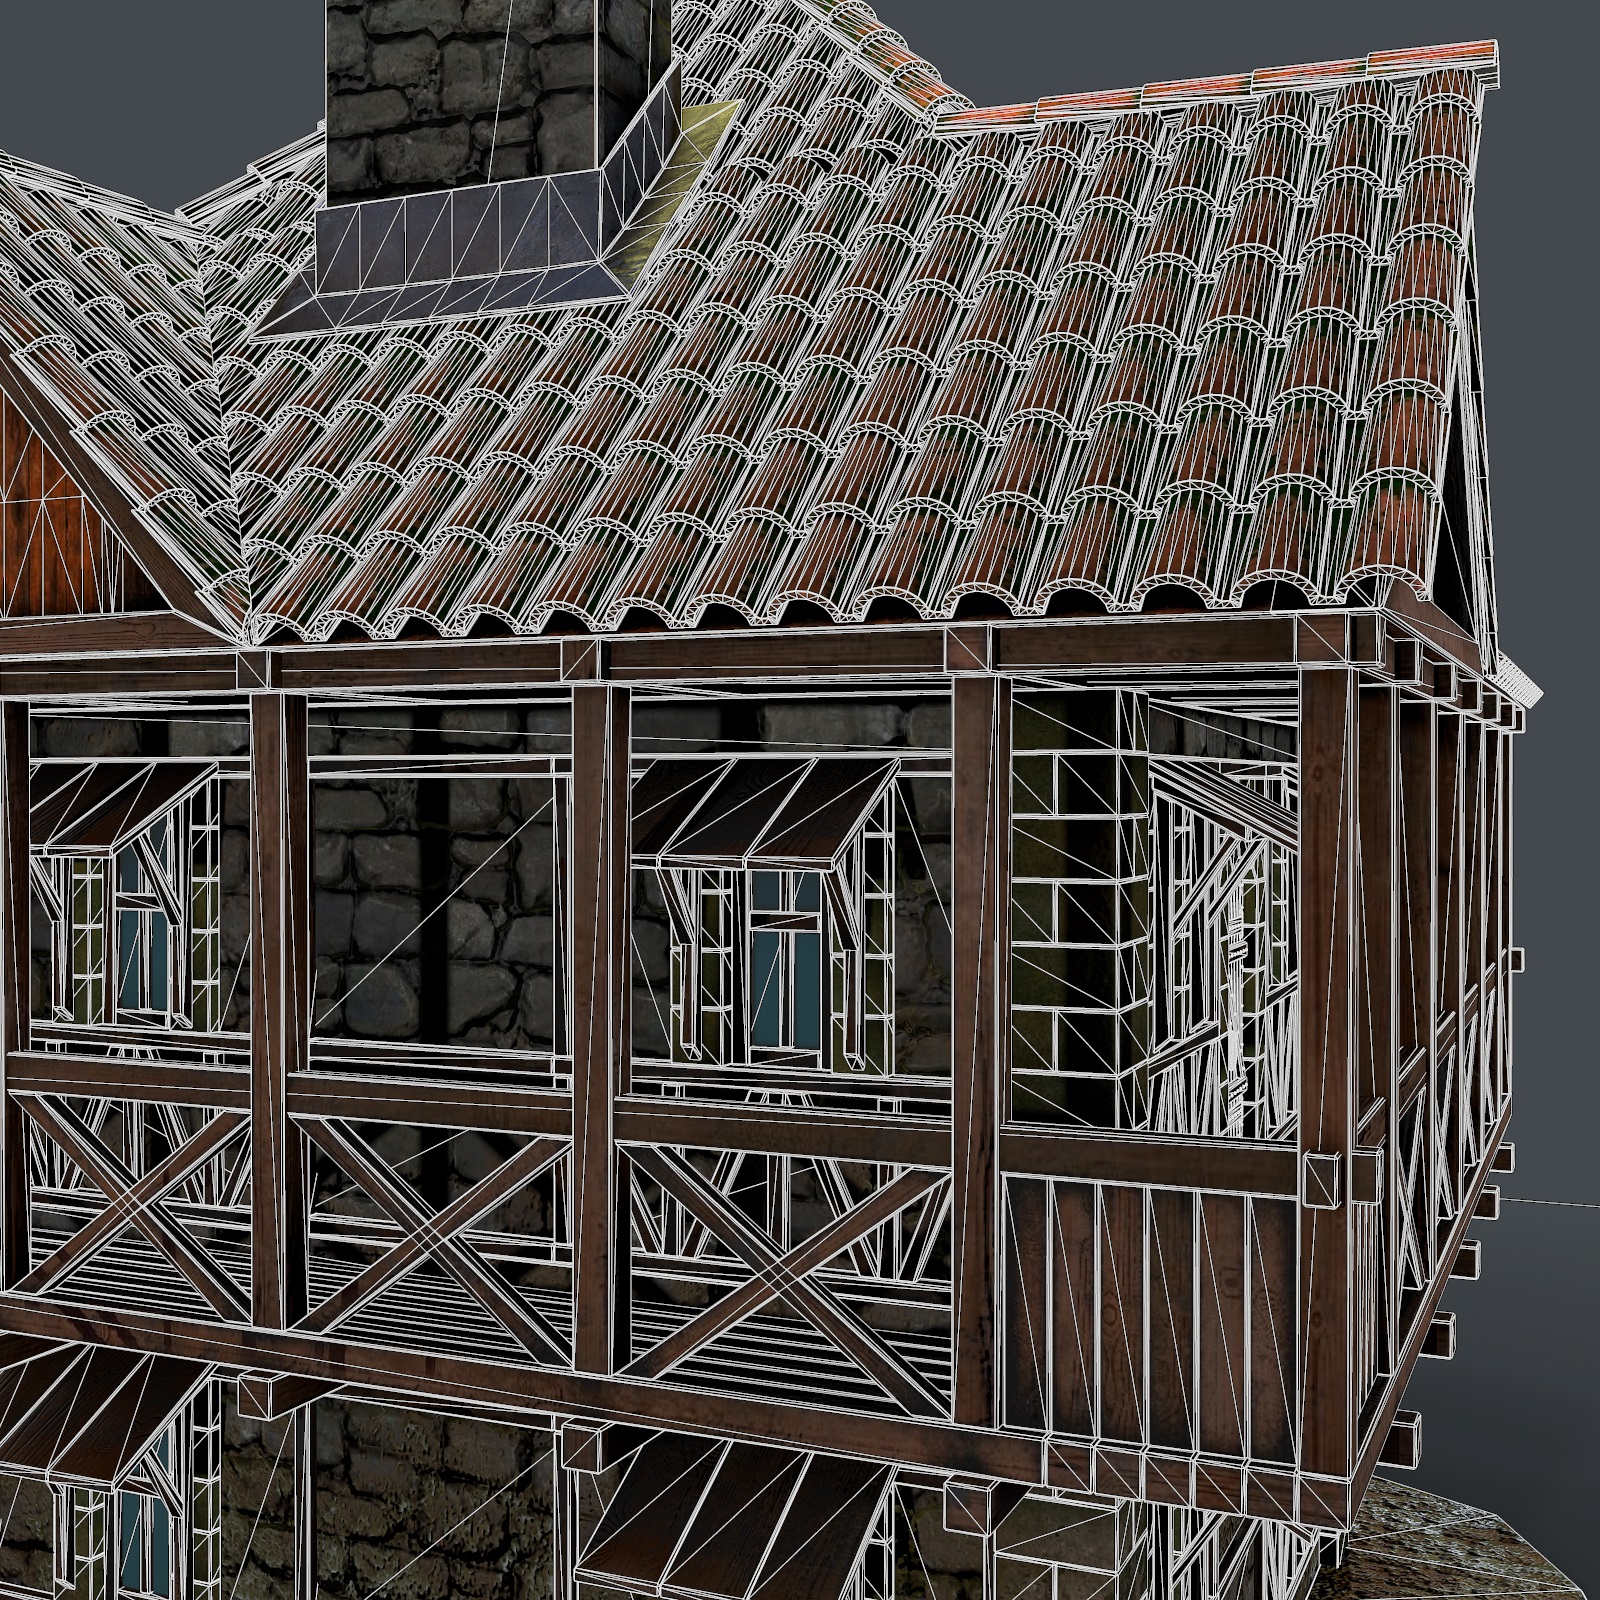 3D Ortaçağ evi 3D model modeli satın - render